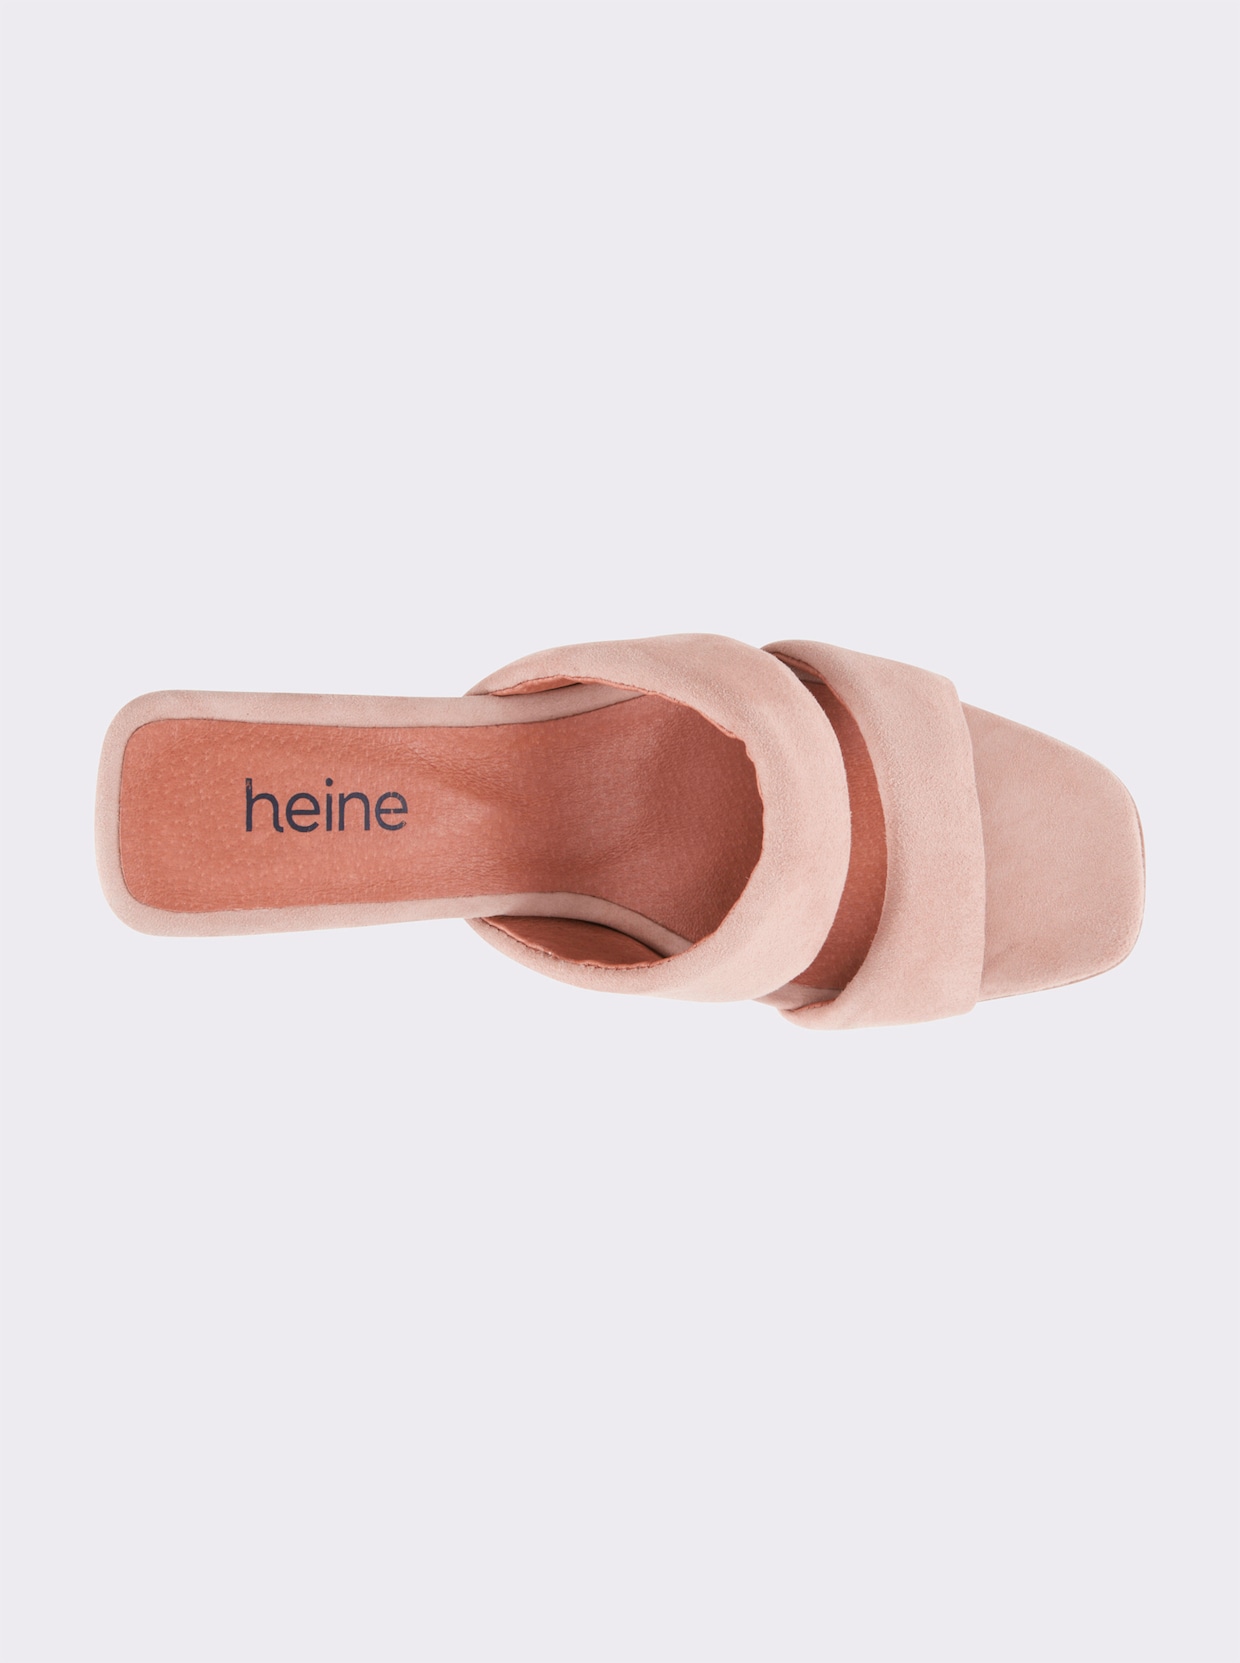 heine slippers - beige